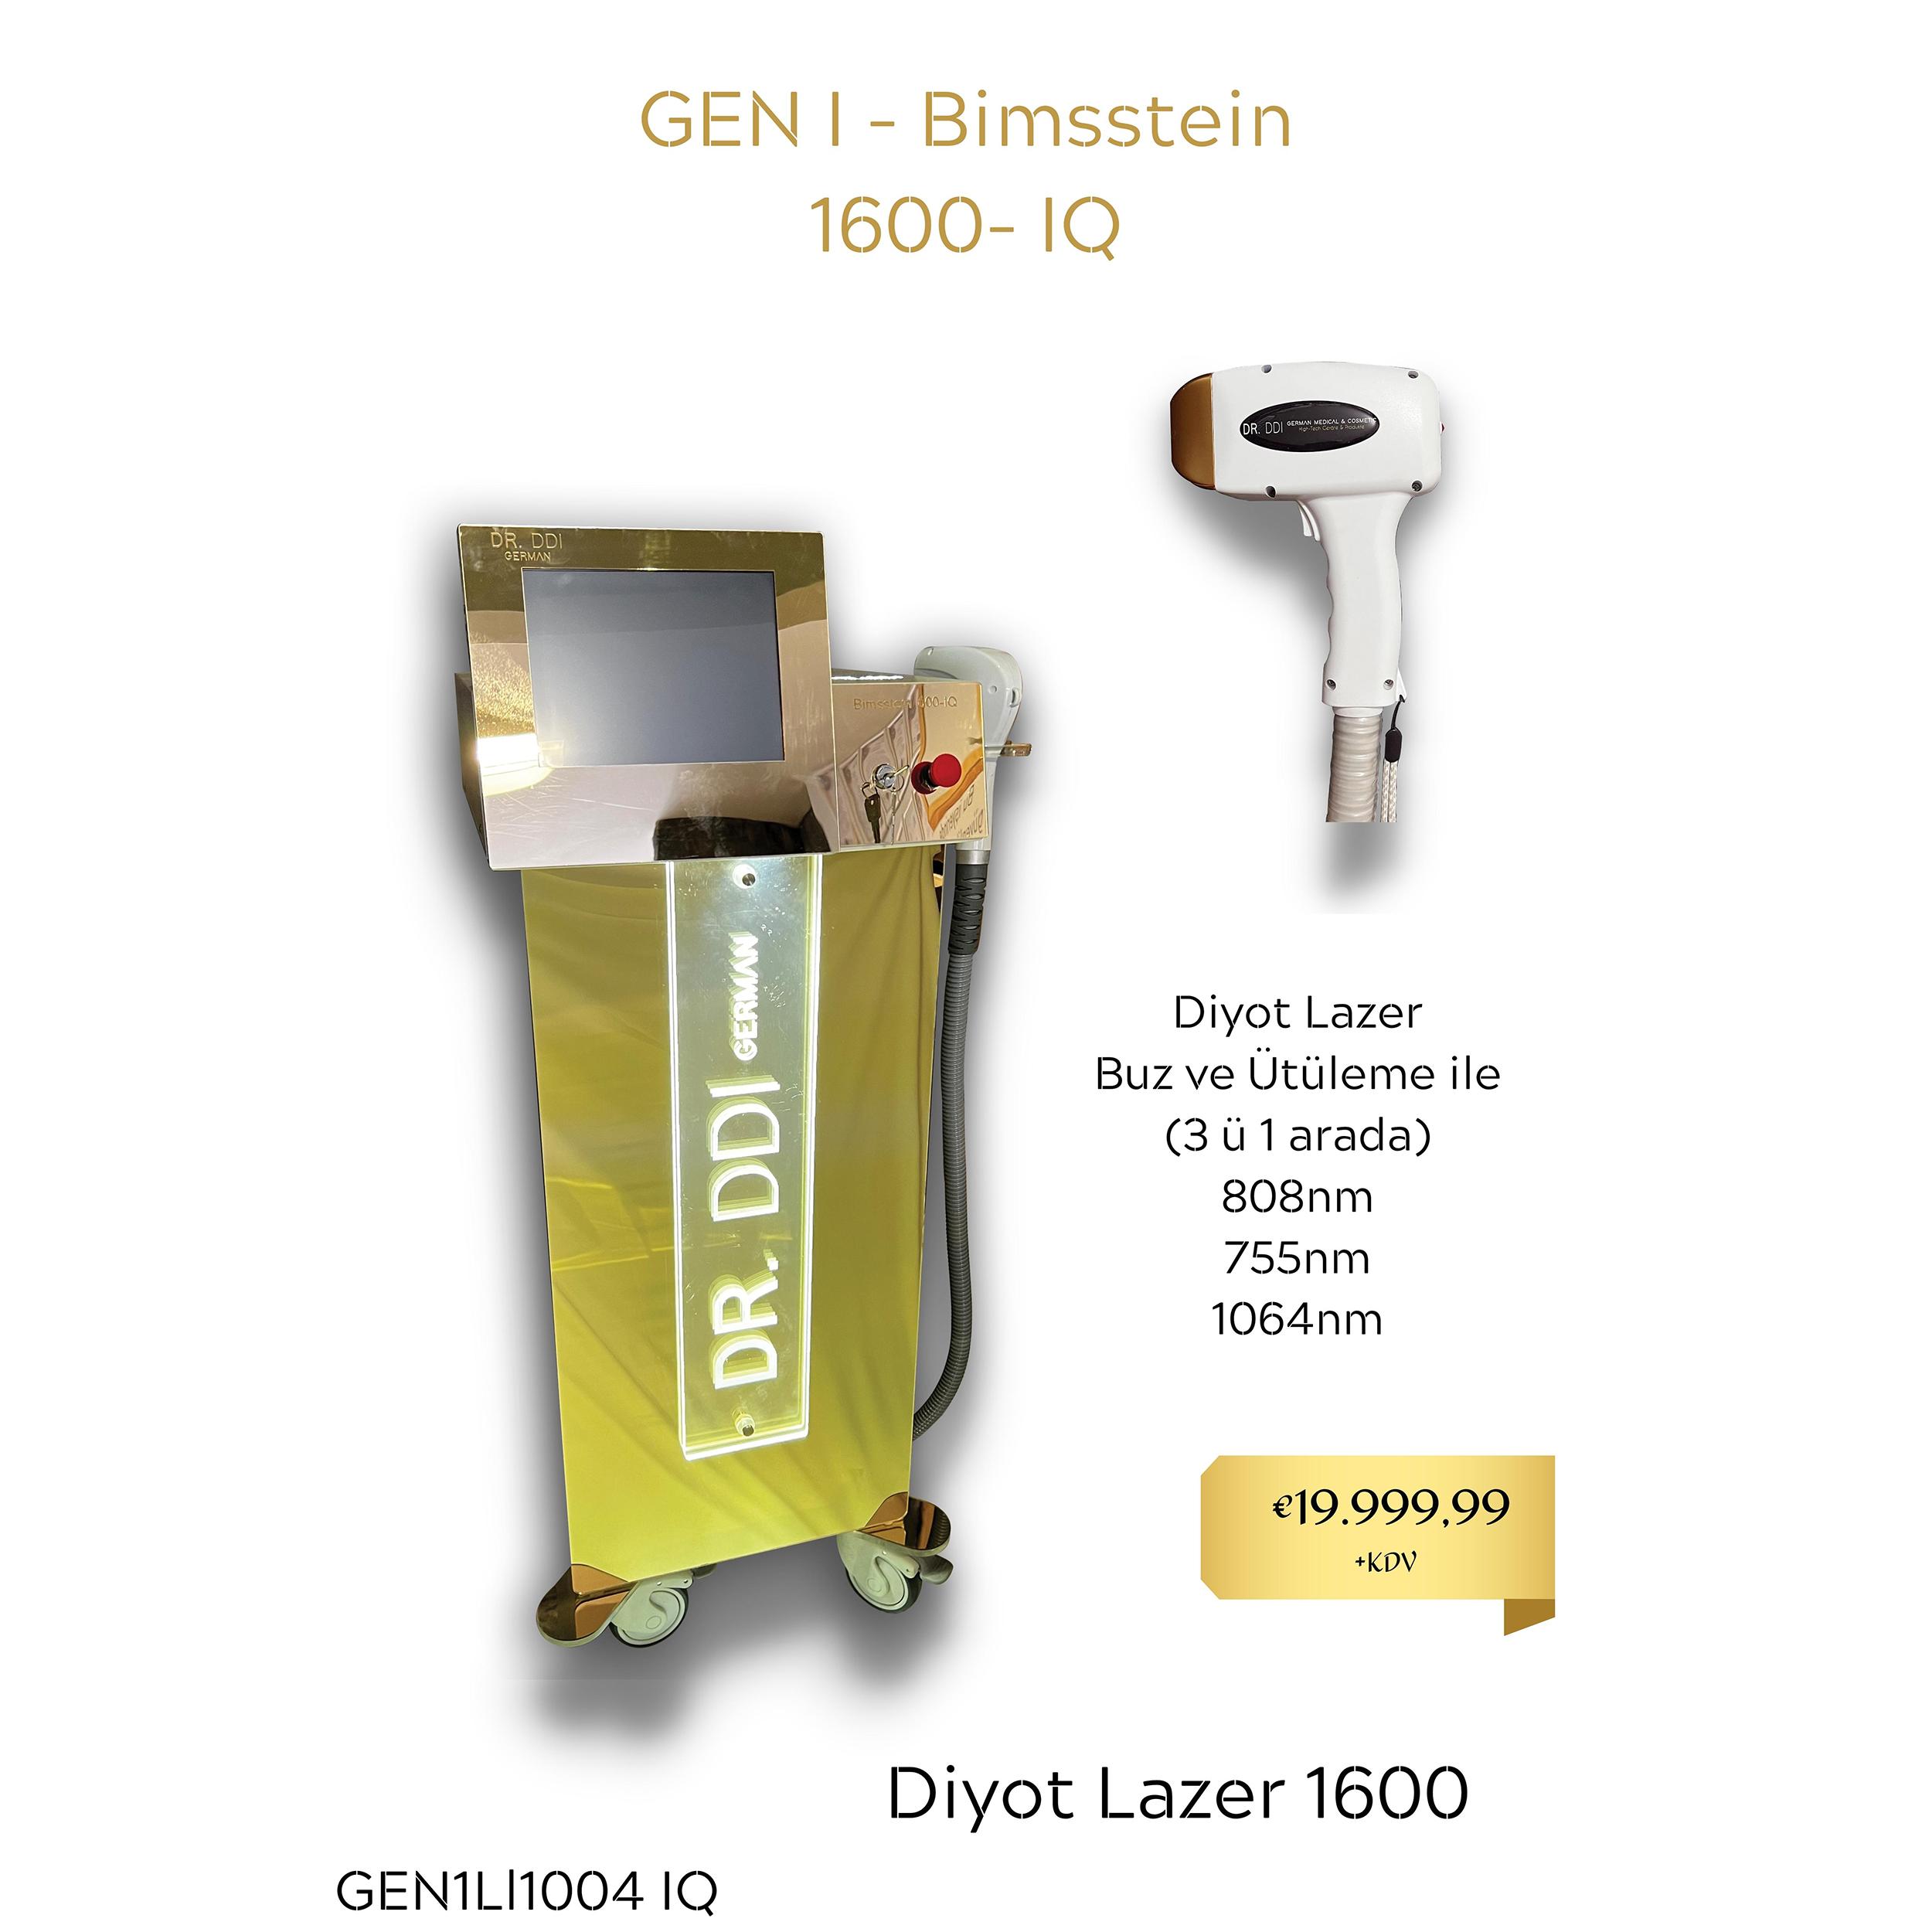 GEN I - Bimsstein 1600- IQ